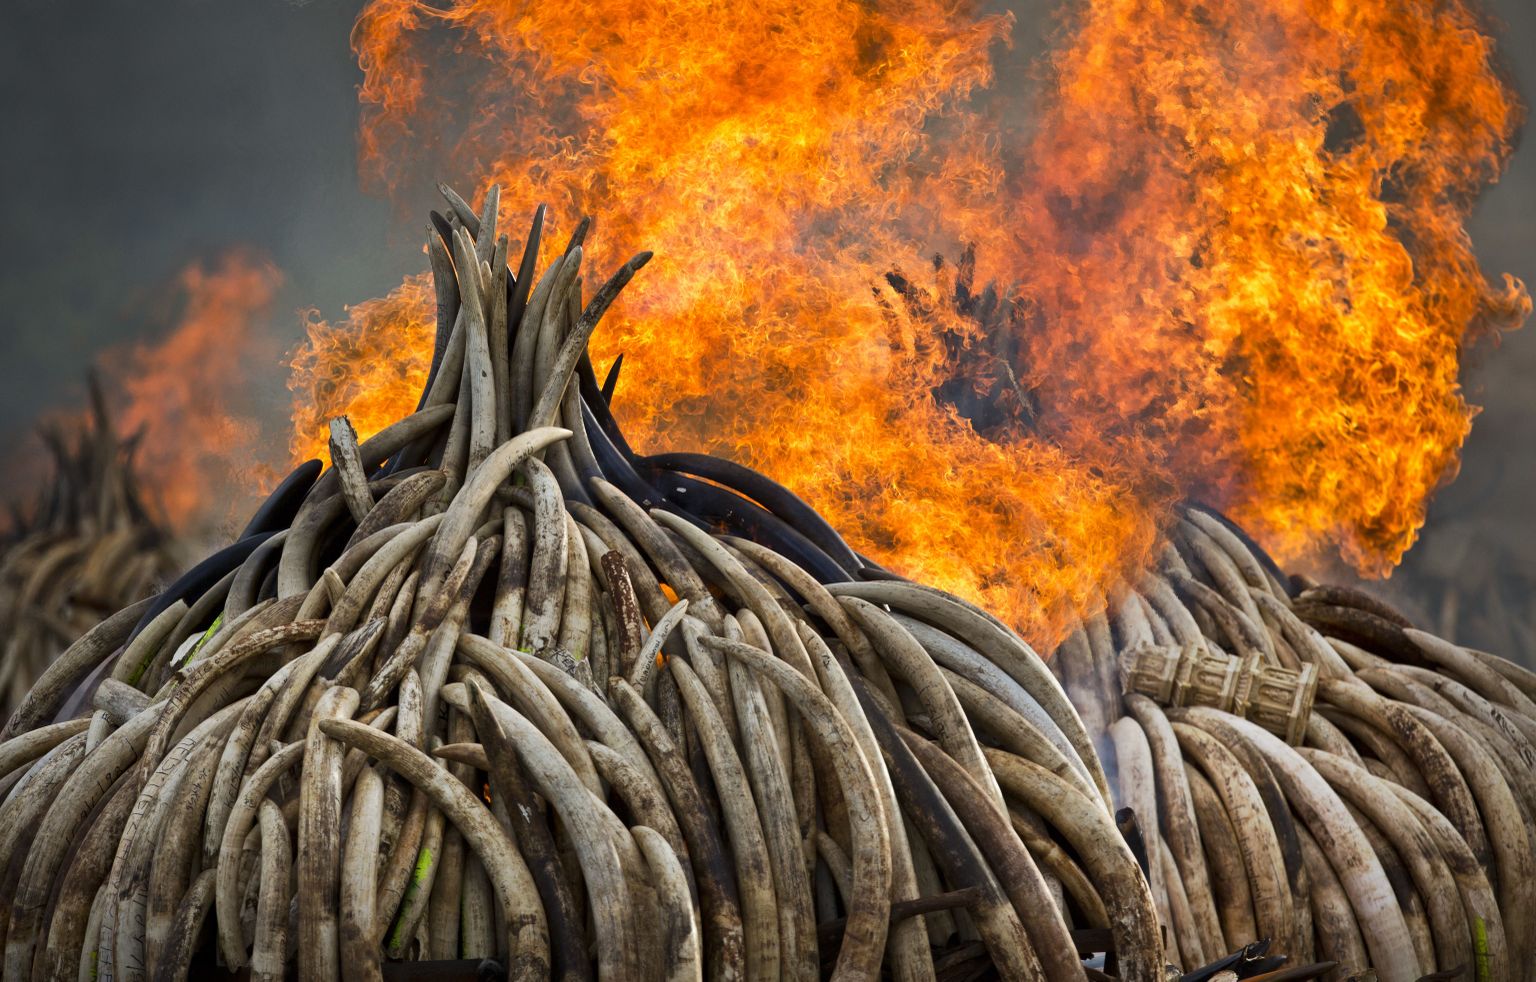 Elevandivõhkade põletamine Keenias Nairobi rahvuspargis. Üks maailma liigirikkuse vähenemise põhjustest ongi salaküttimine, mille taga on aga inimeste rahvaarvu kiire kasv.